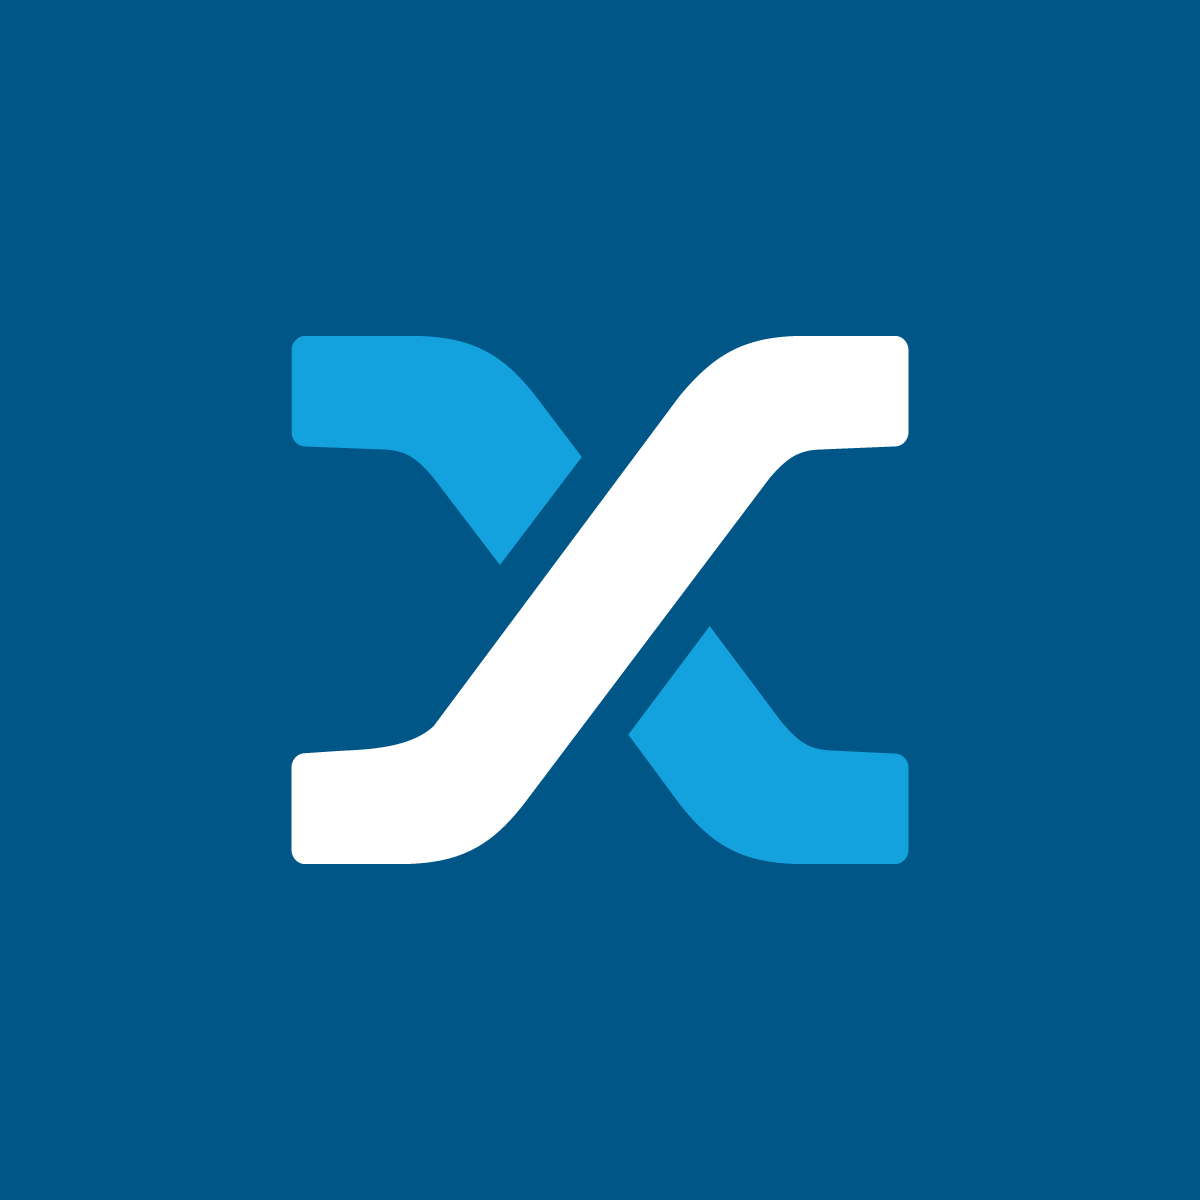 Auxmoney’s logo